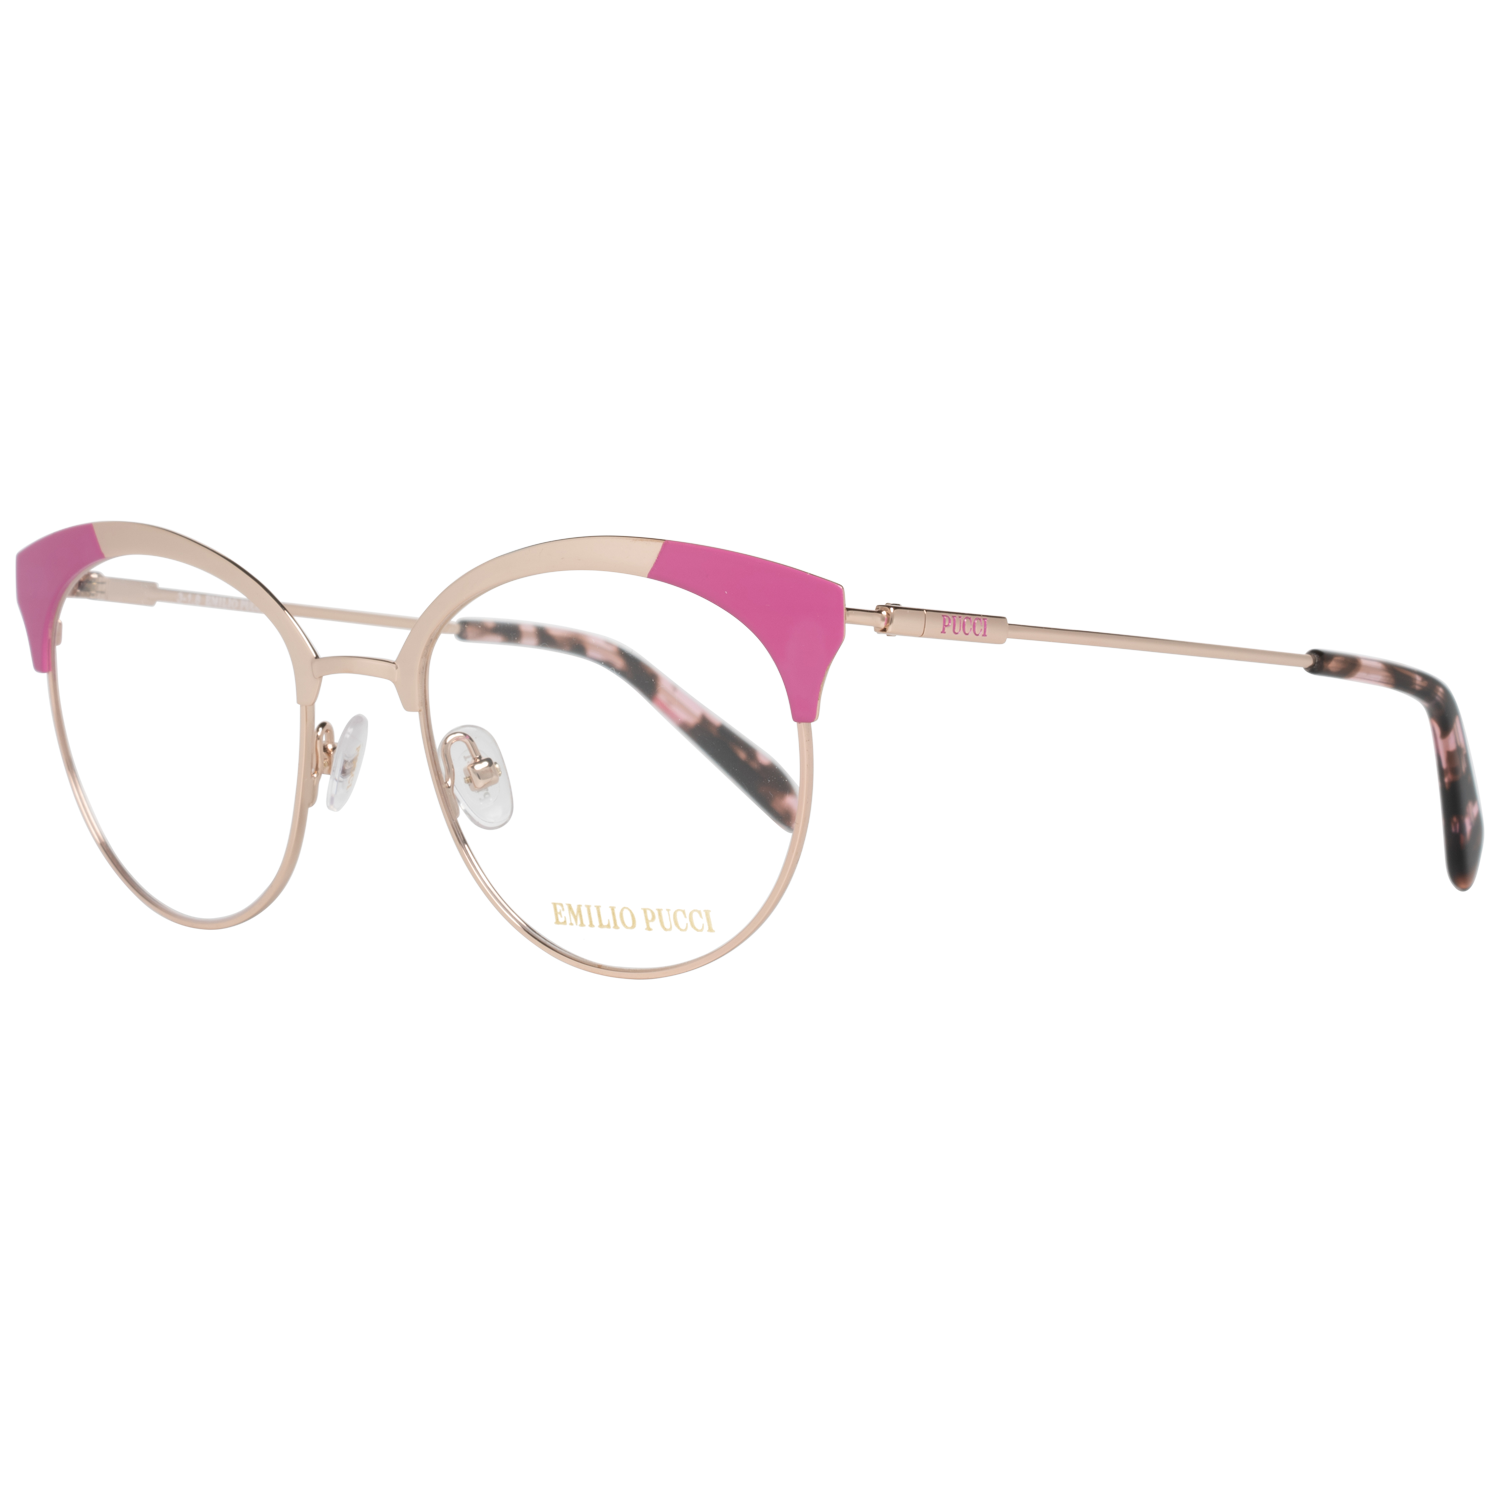 Emilio Pucci Frames Emilio Pucci Optical Frame EP5086 028 52 Eyeglasses Eyewear UK USA Australia 